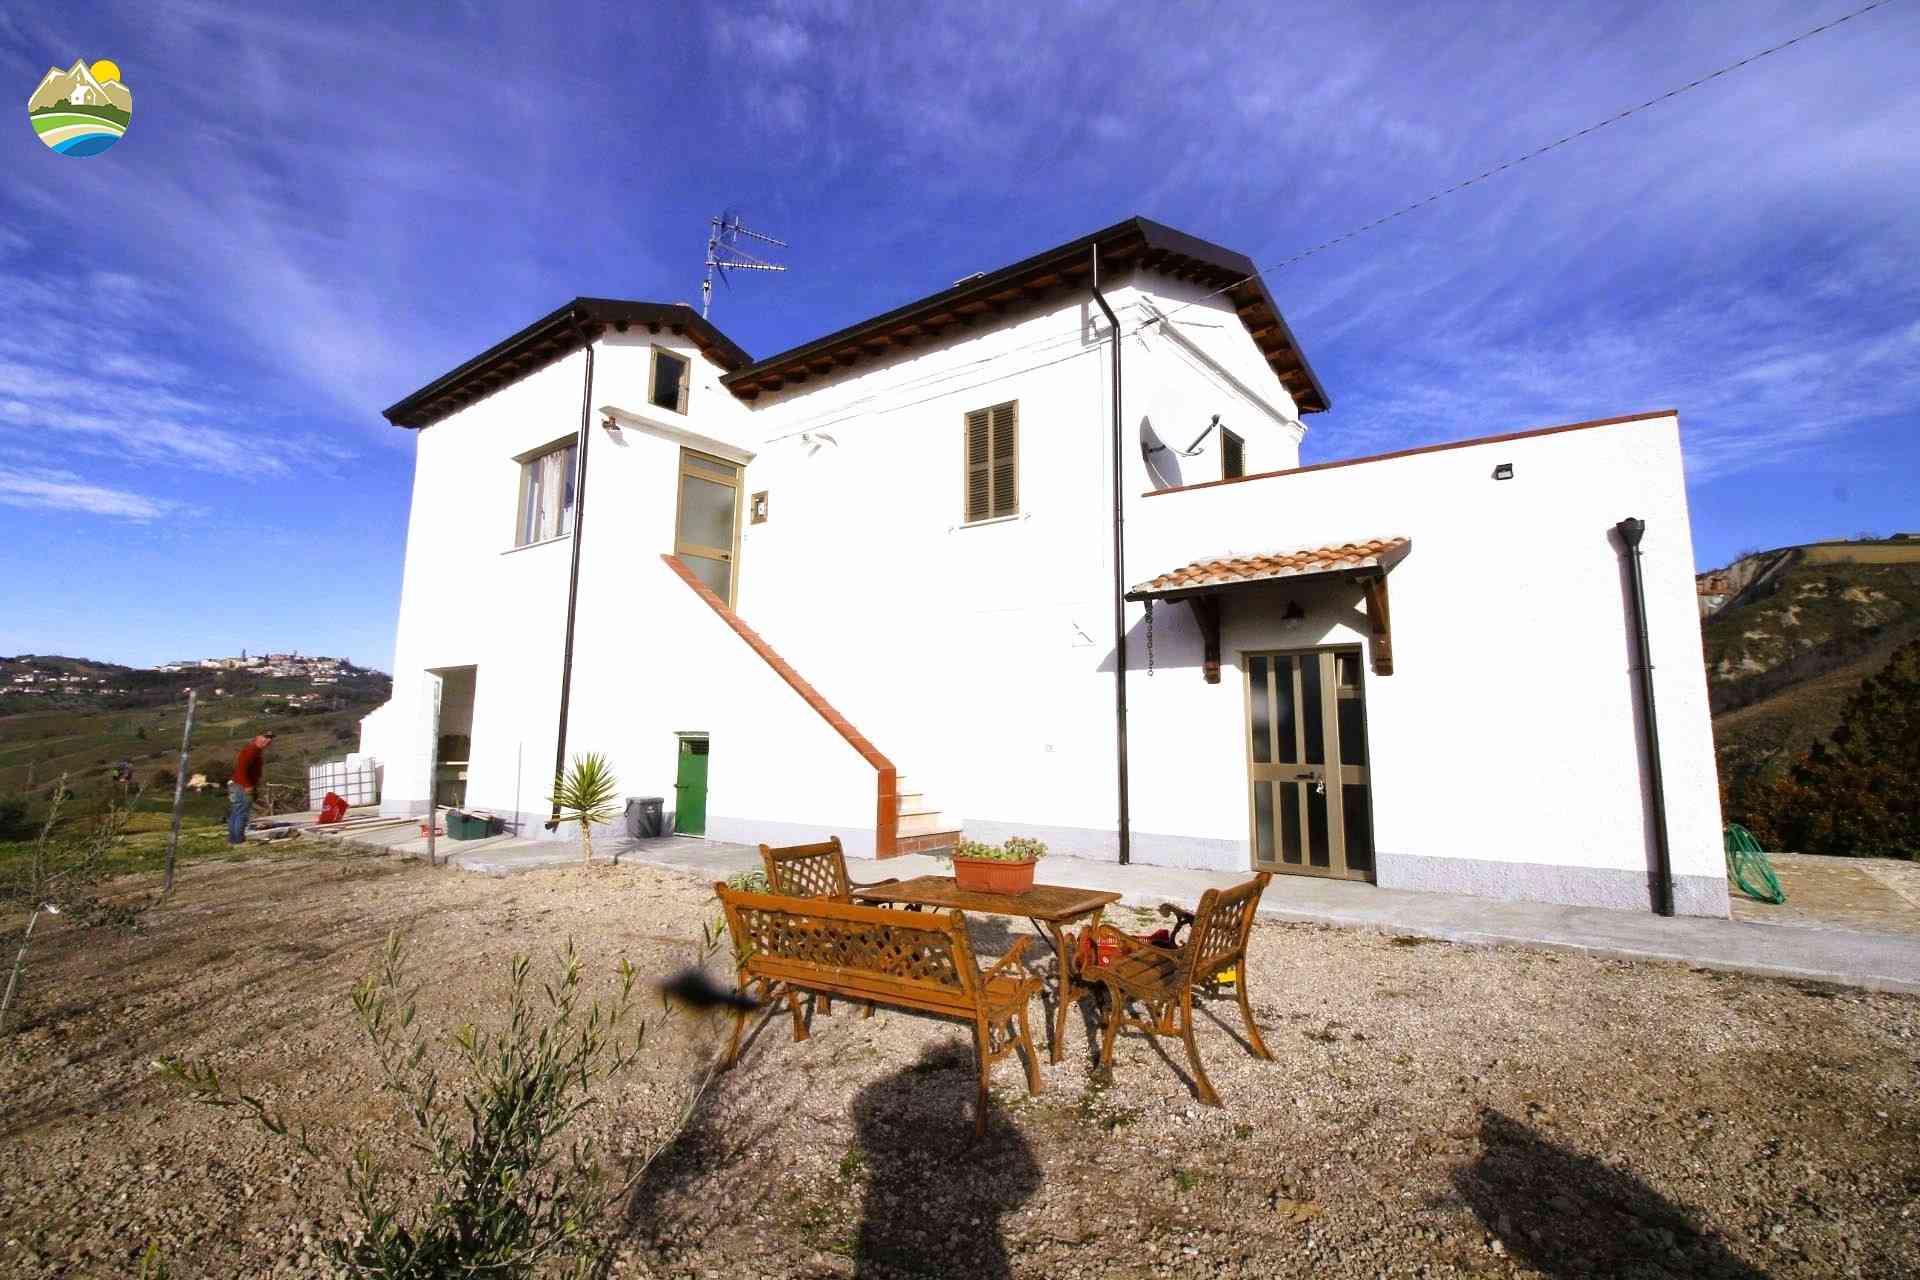 Casa di campagna Casa di campagna in vendita Cellino Attanasio (TE), Tenuta Vallerossa - Cellino Attanasio - EUR 238.752 860